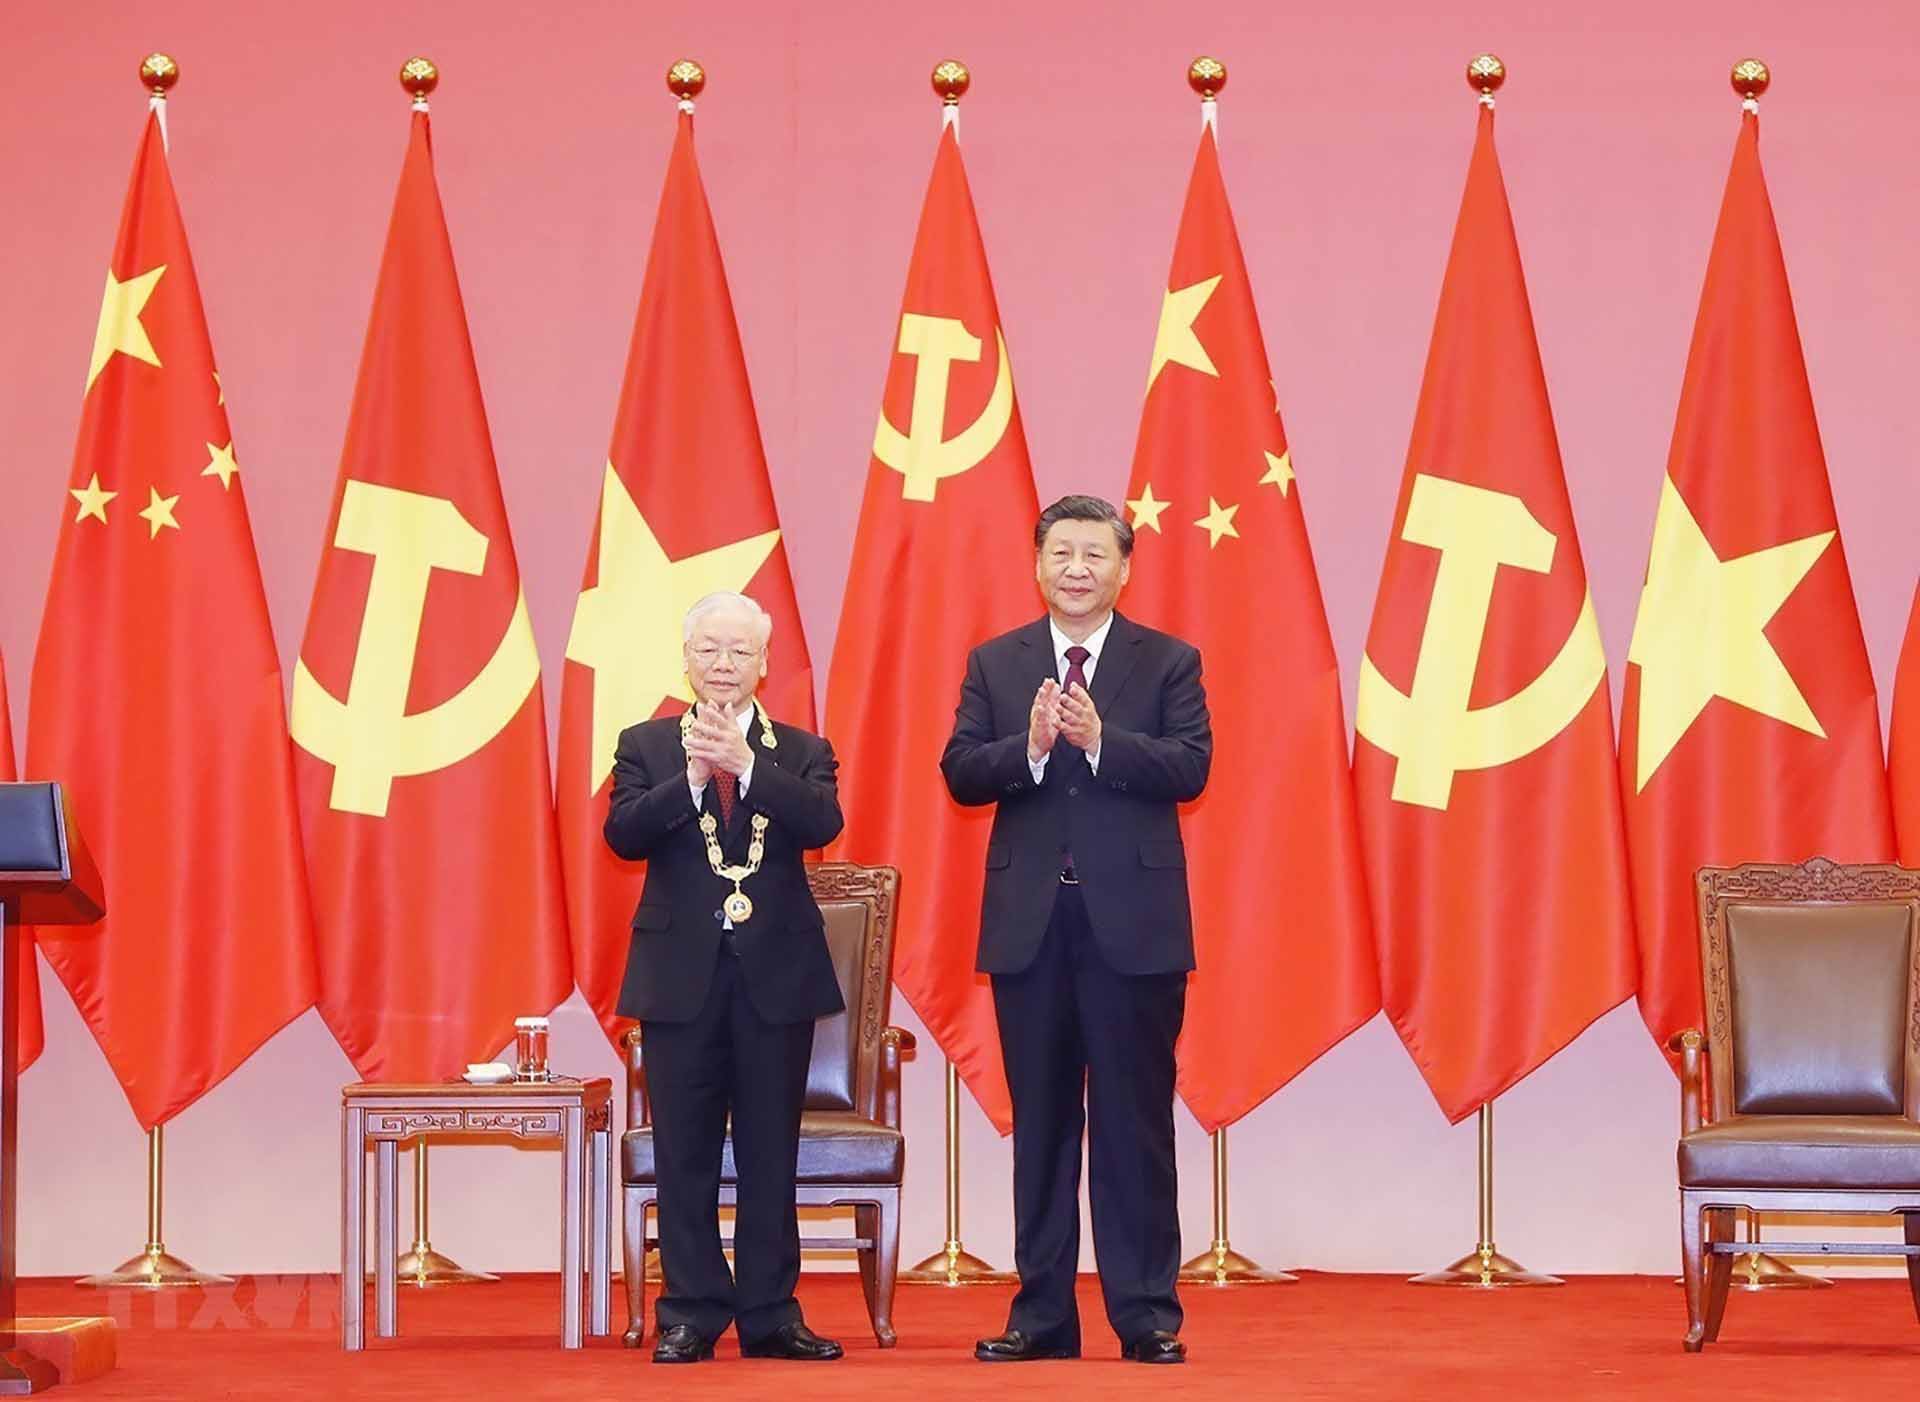 Đảng Cộng sản Trung Quốc: Việt Nam và Đảng Cộng sản Trung Quốc đã cùng nhau xây dựng một mối quan hệ đối tác chiến lược toàn diện và cứng cáp trong năm